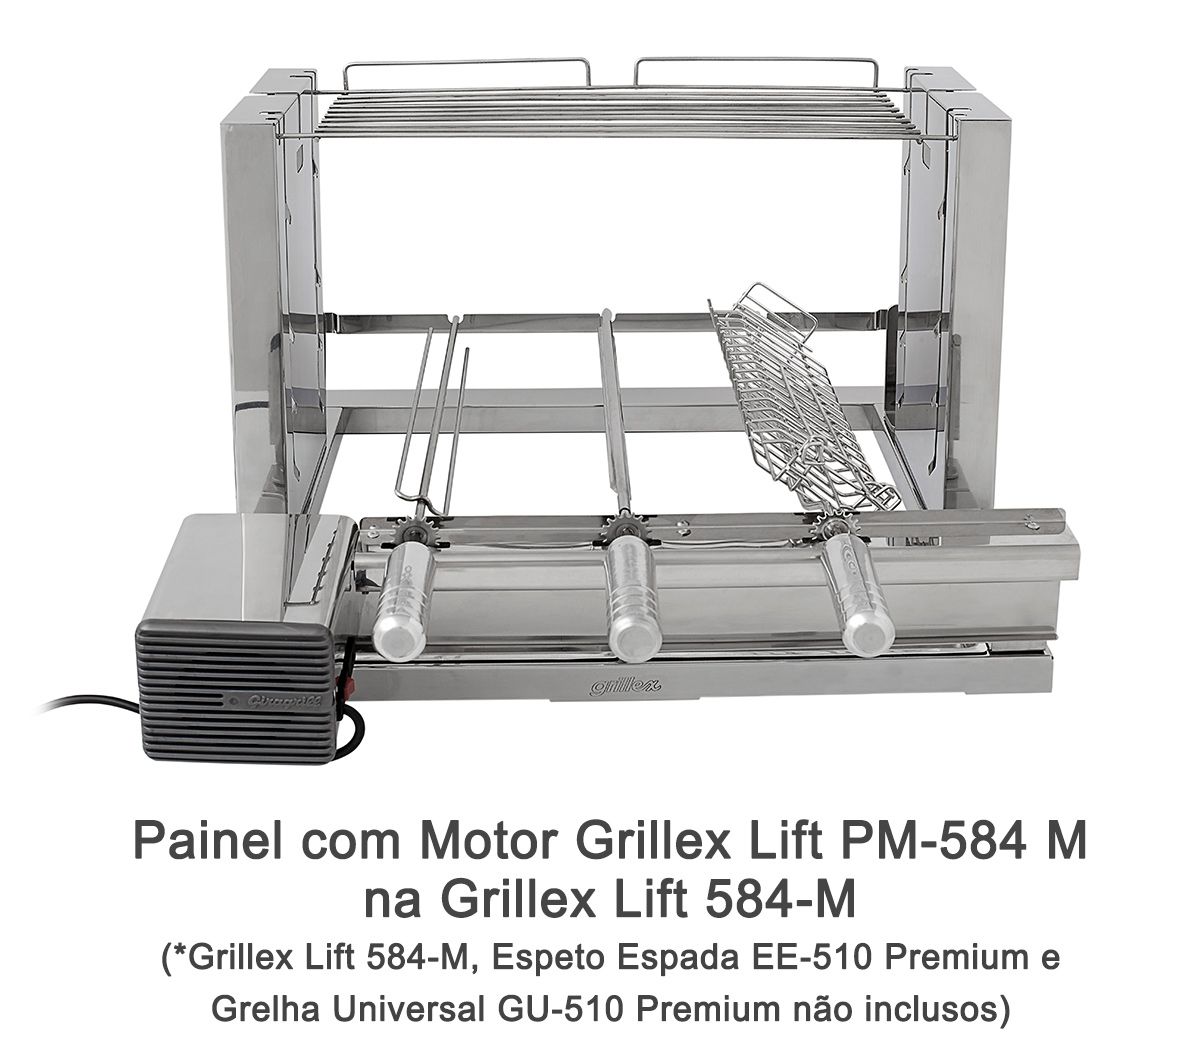 Painel com Motor Grillex Lift PM-584 M